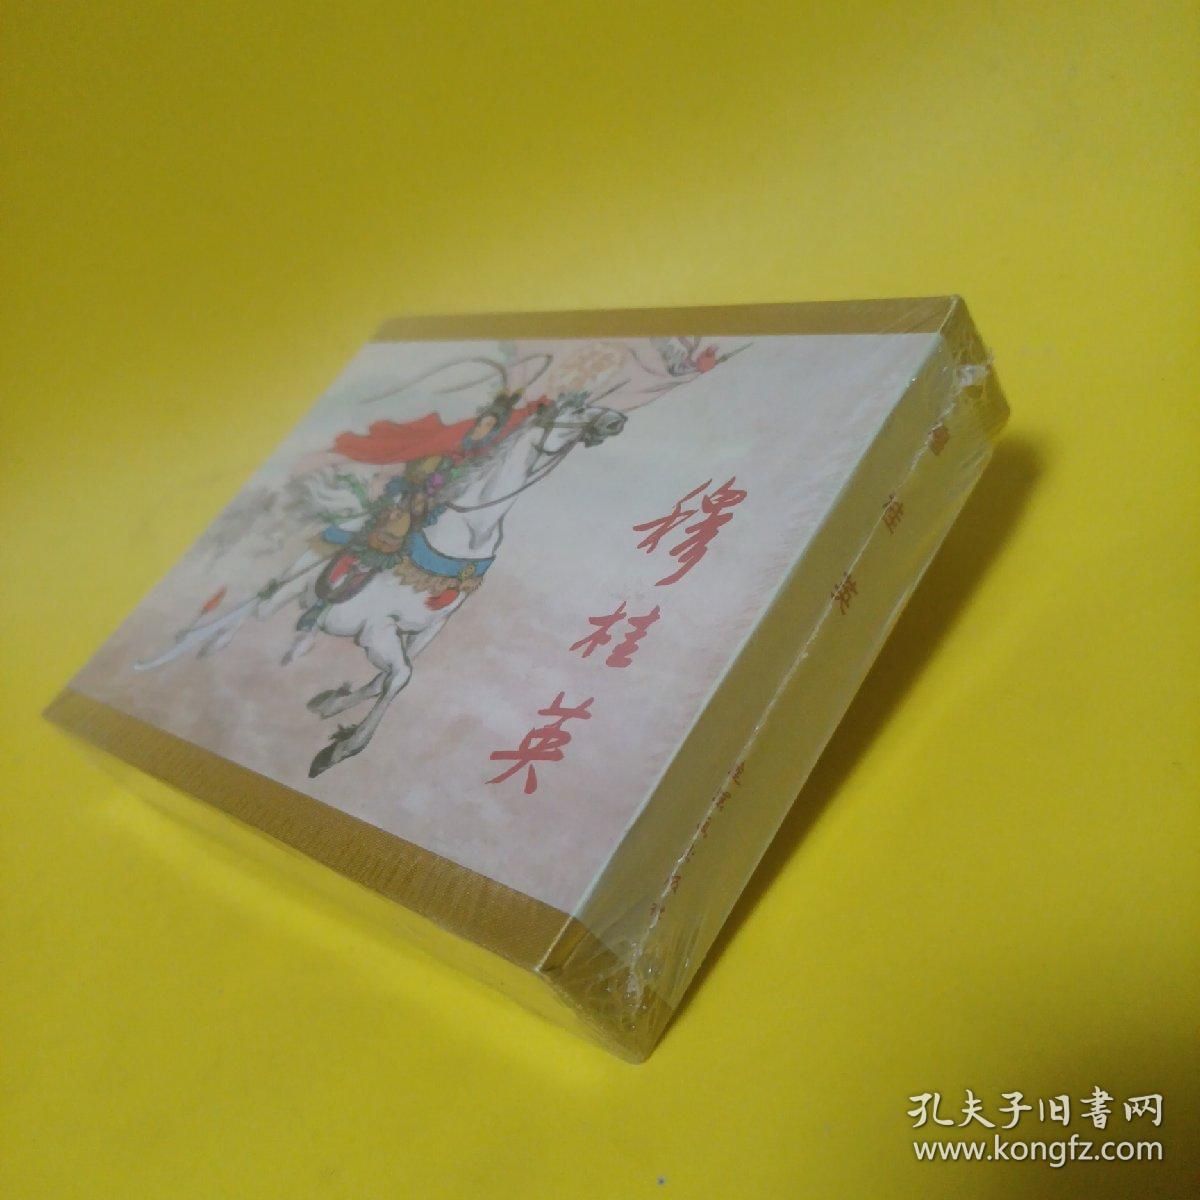 穆桂英 连环画出版社 精装带盒